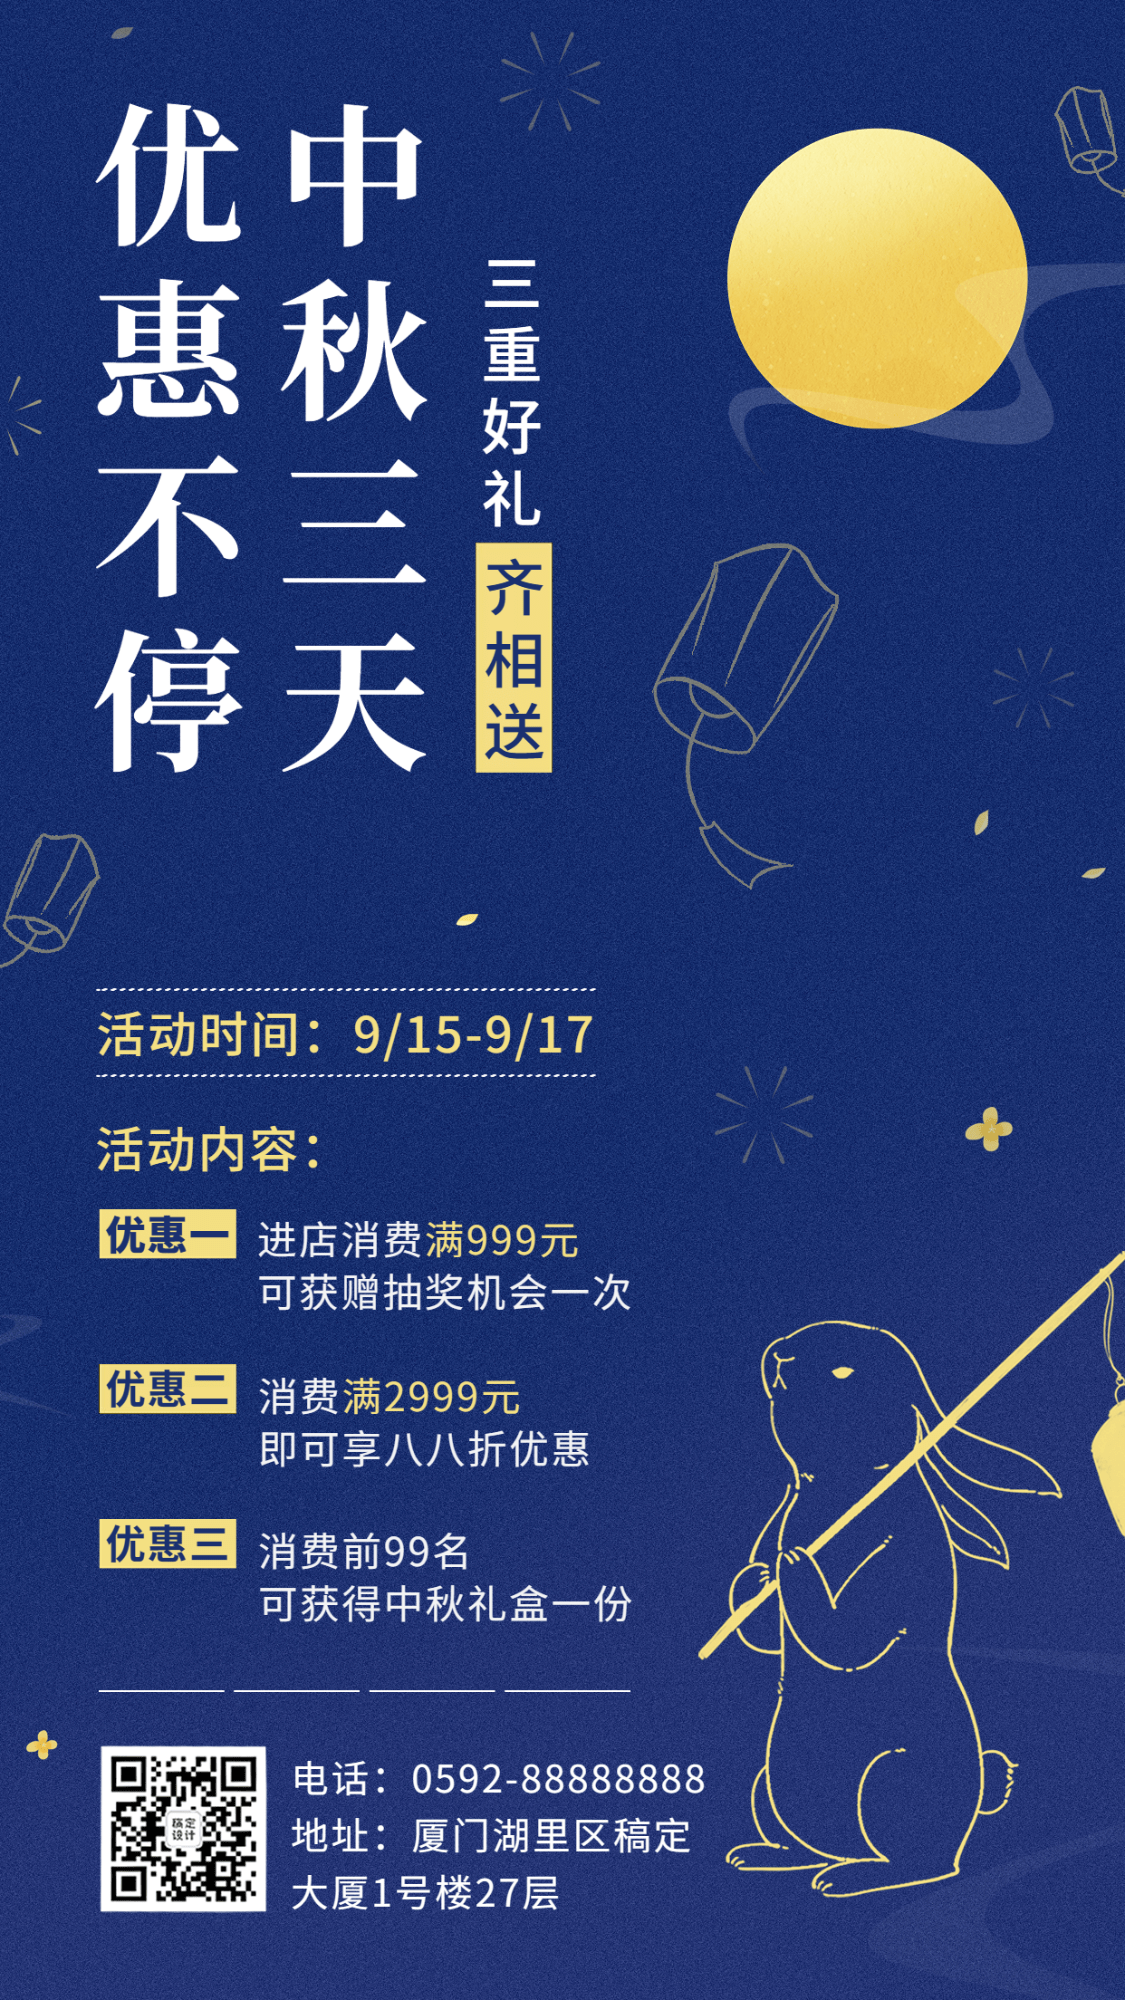 中秋节节日营销活动营销排版手机海报预览效果